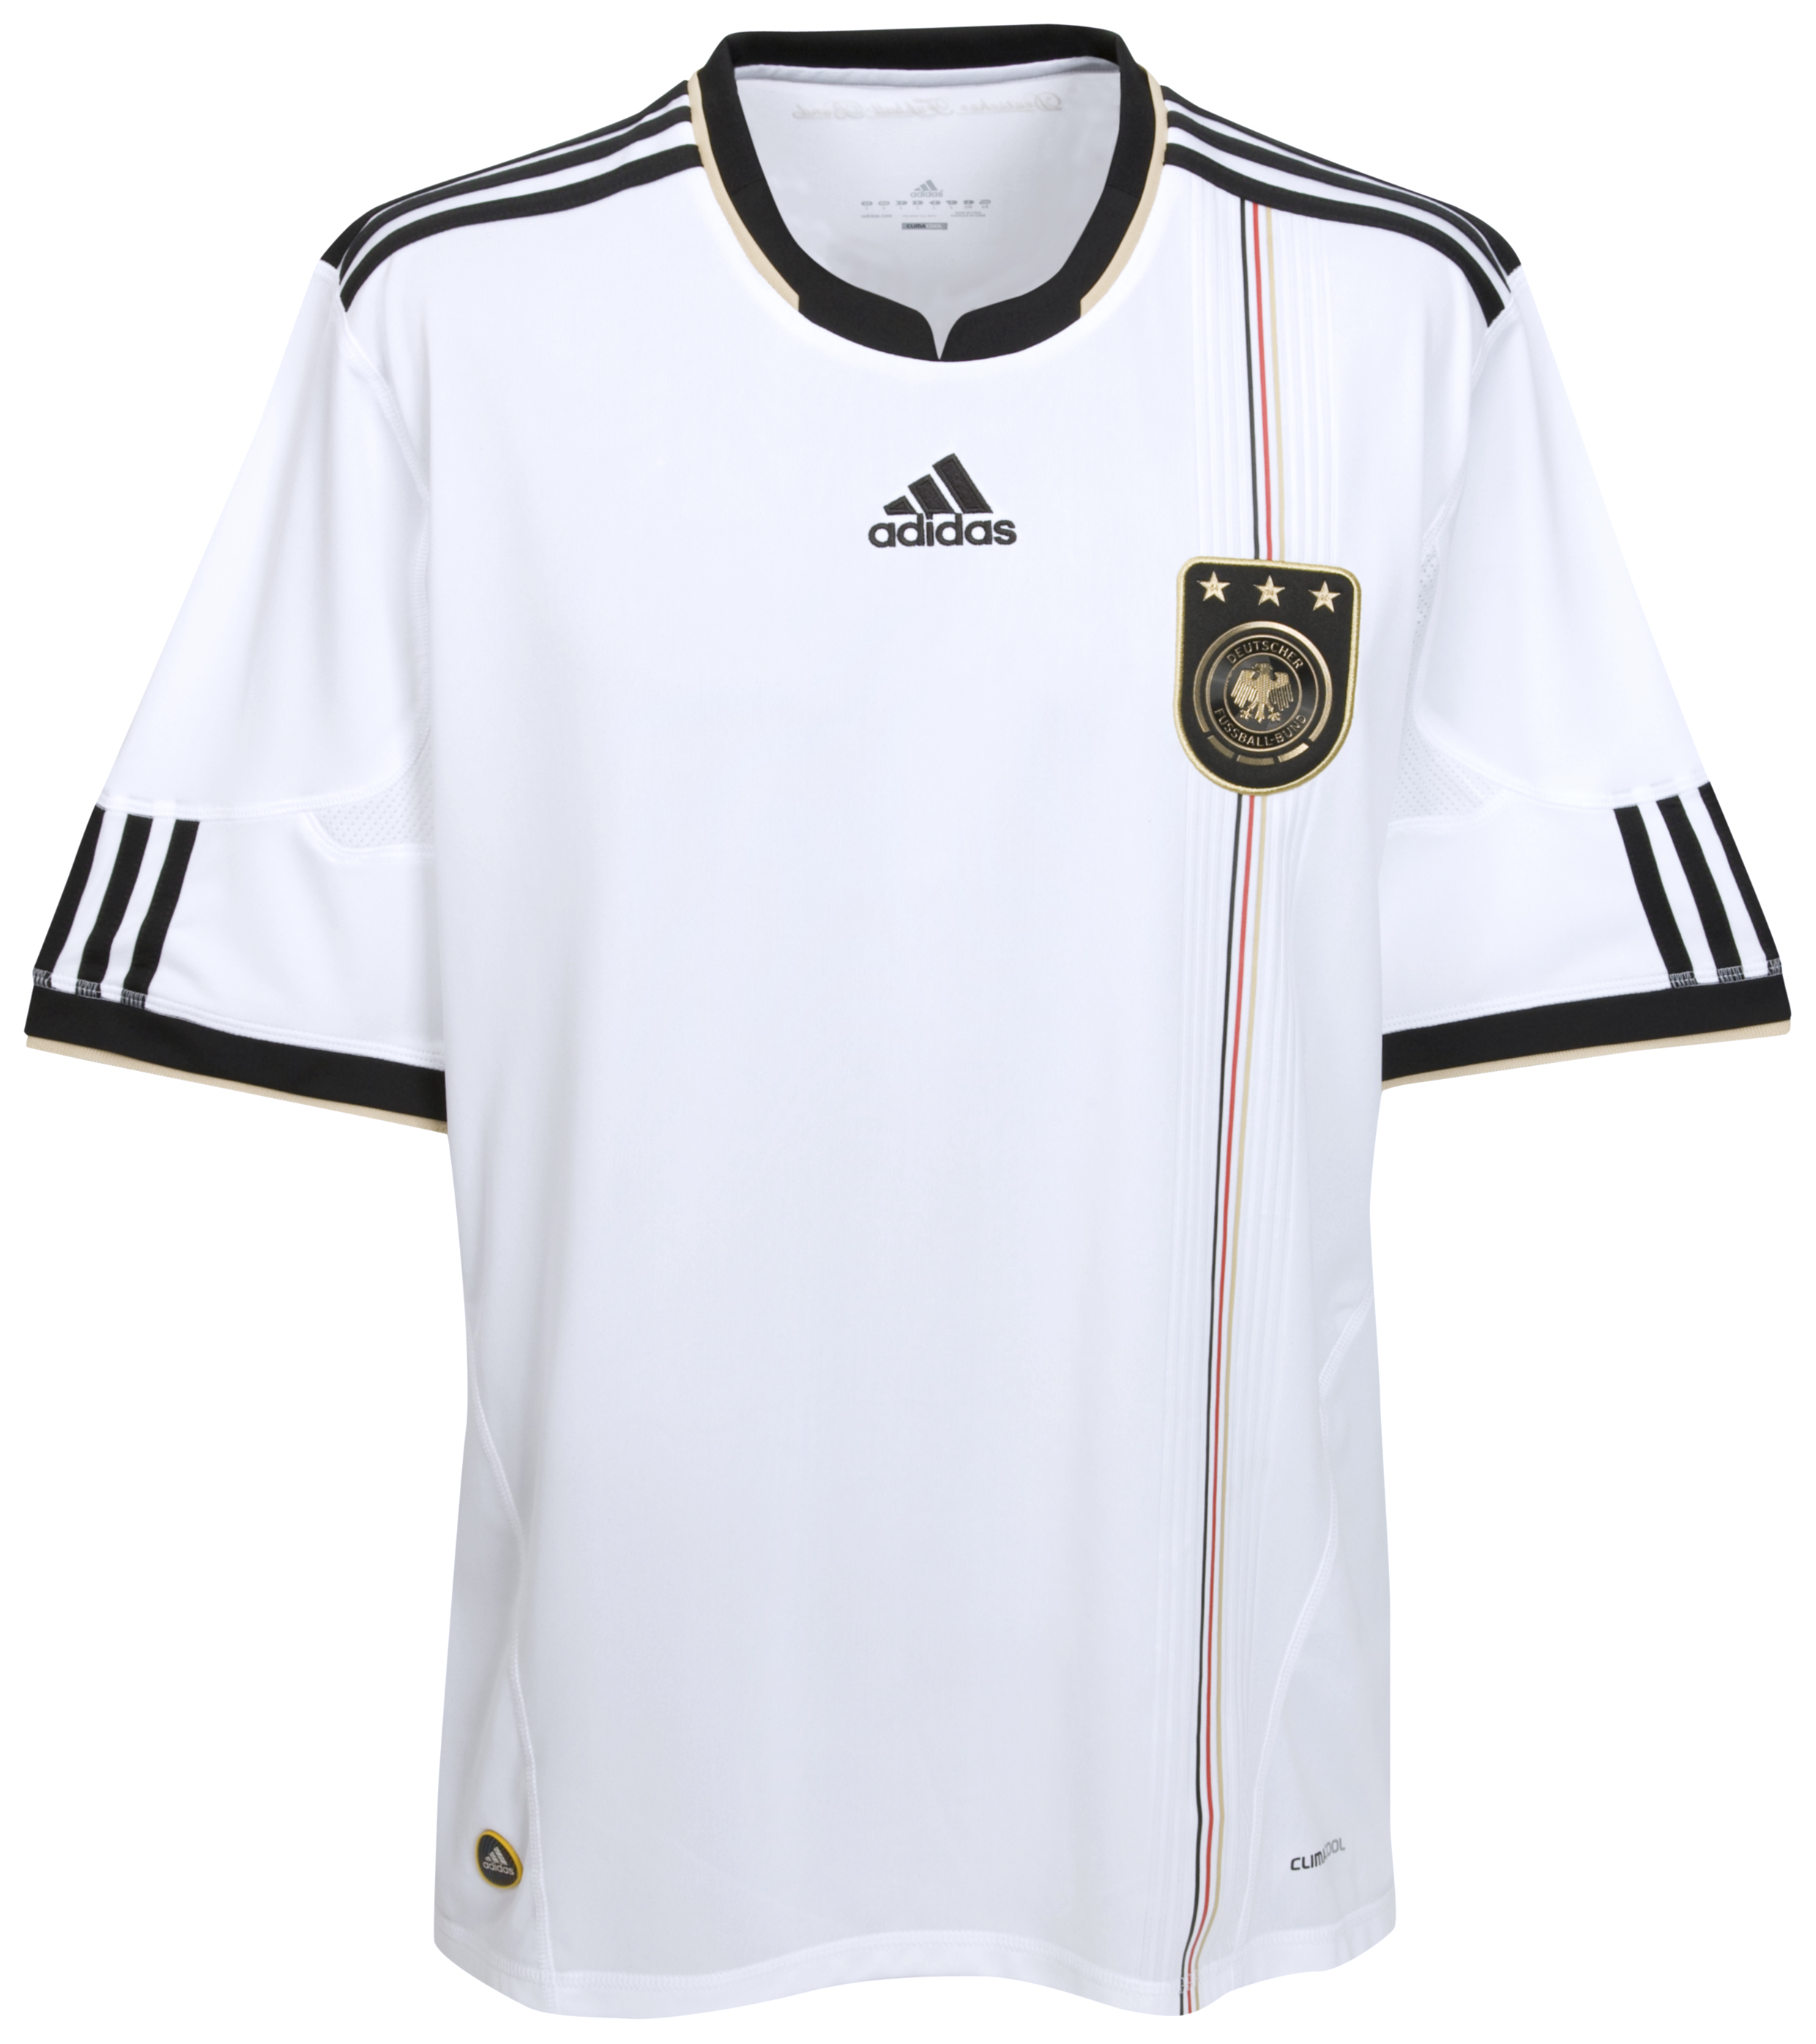 الملابس النهائيه لكأس العالم (2010) Cfc-63741